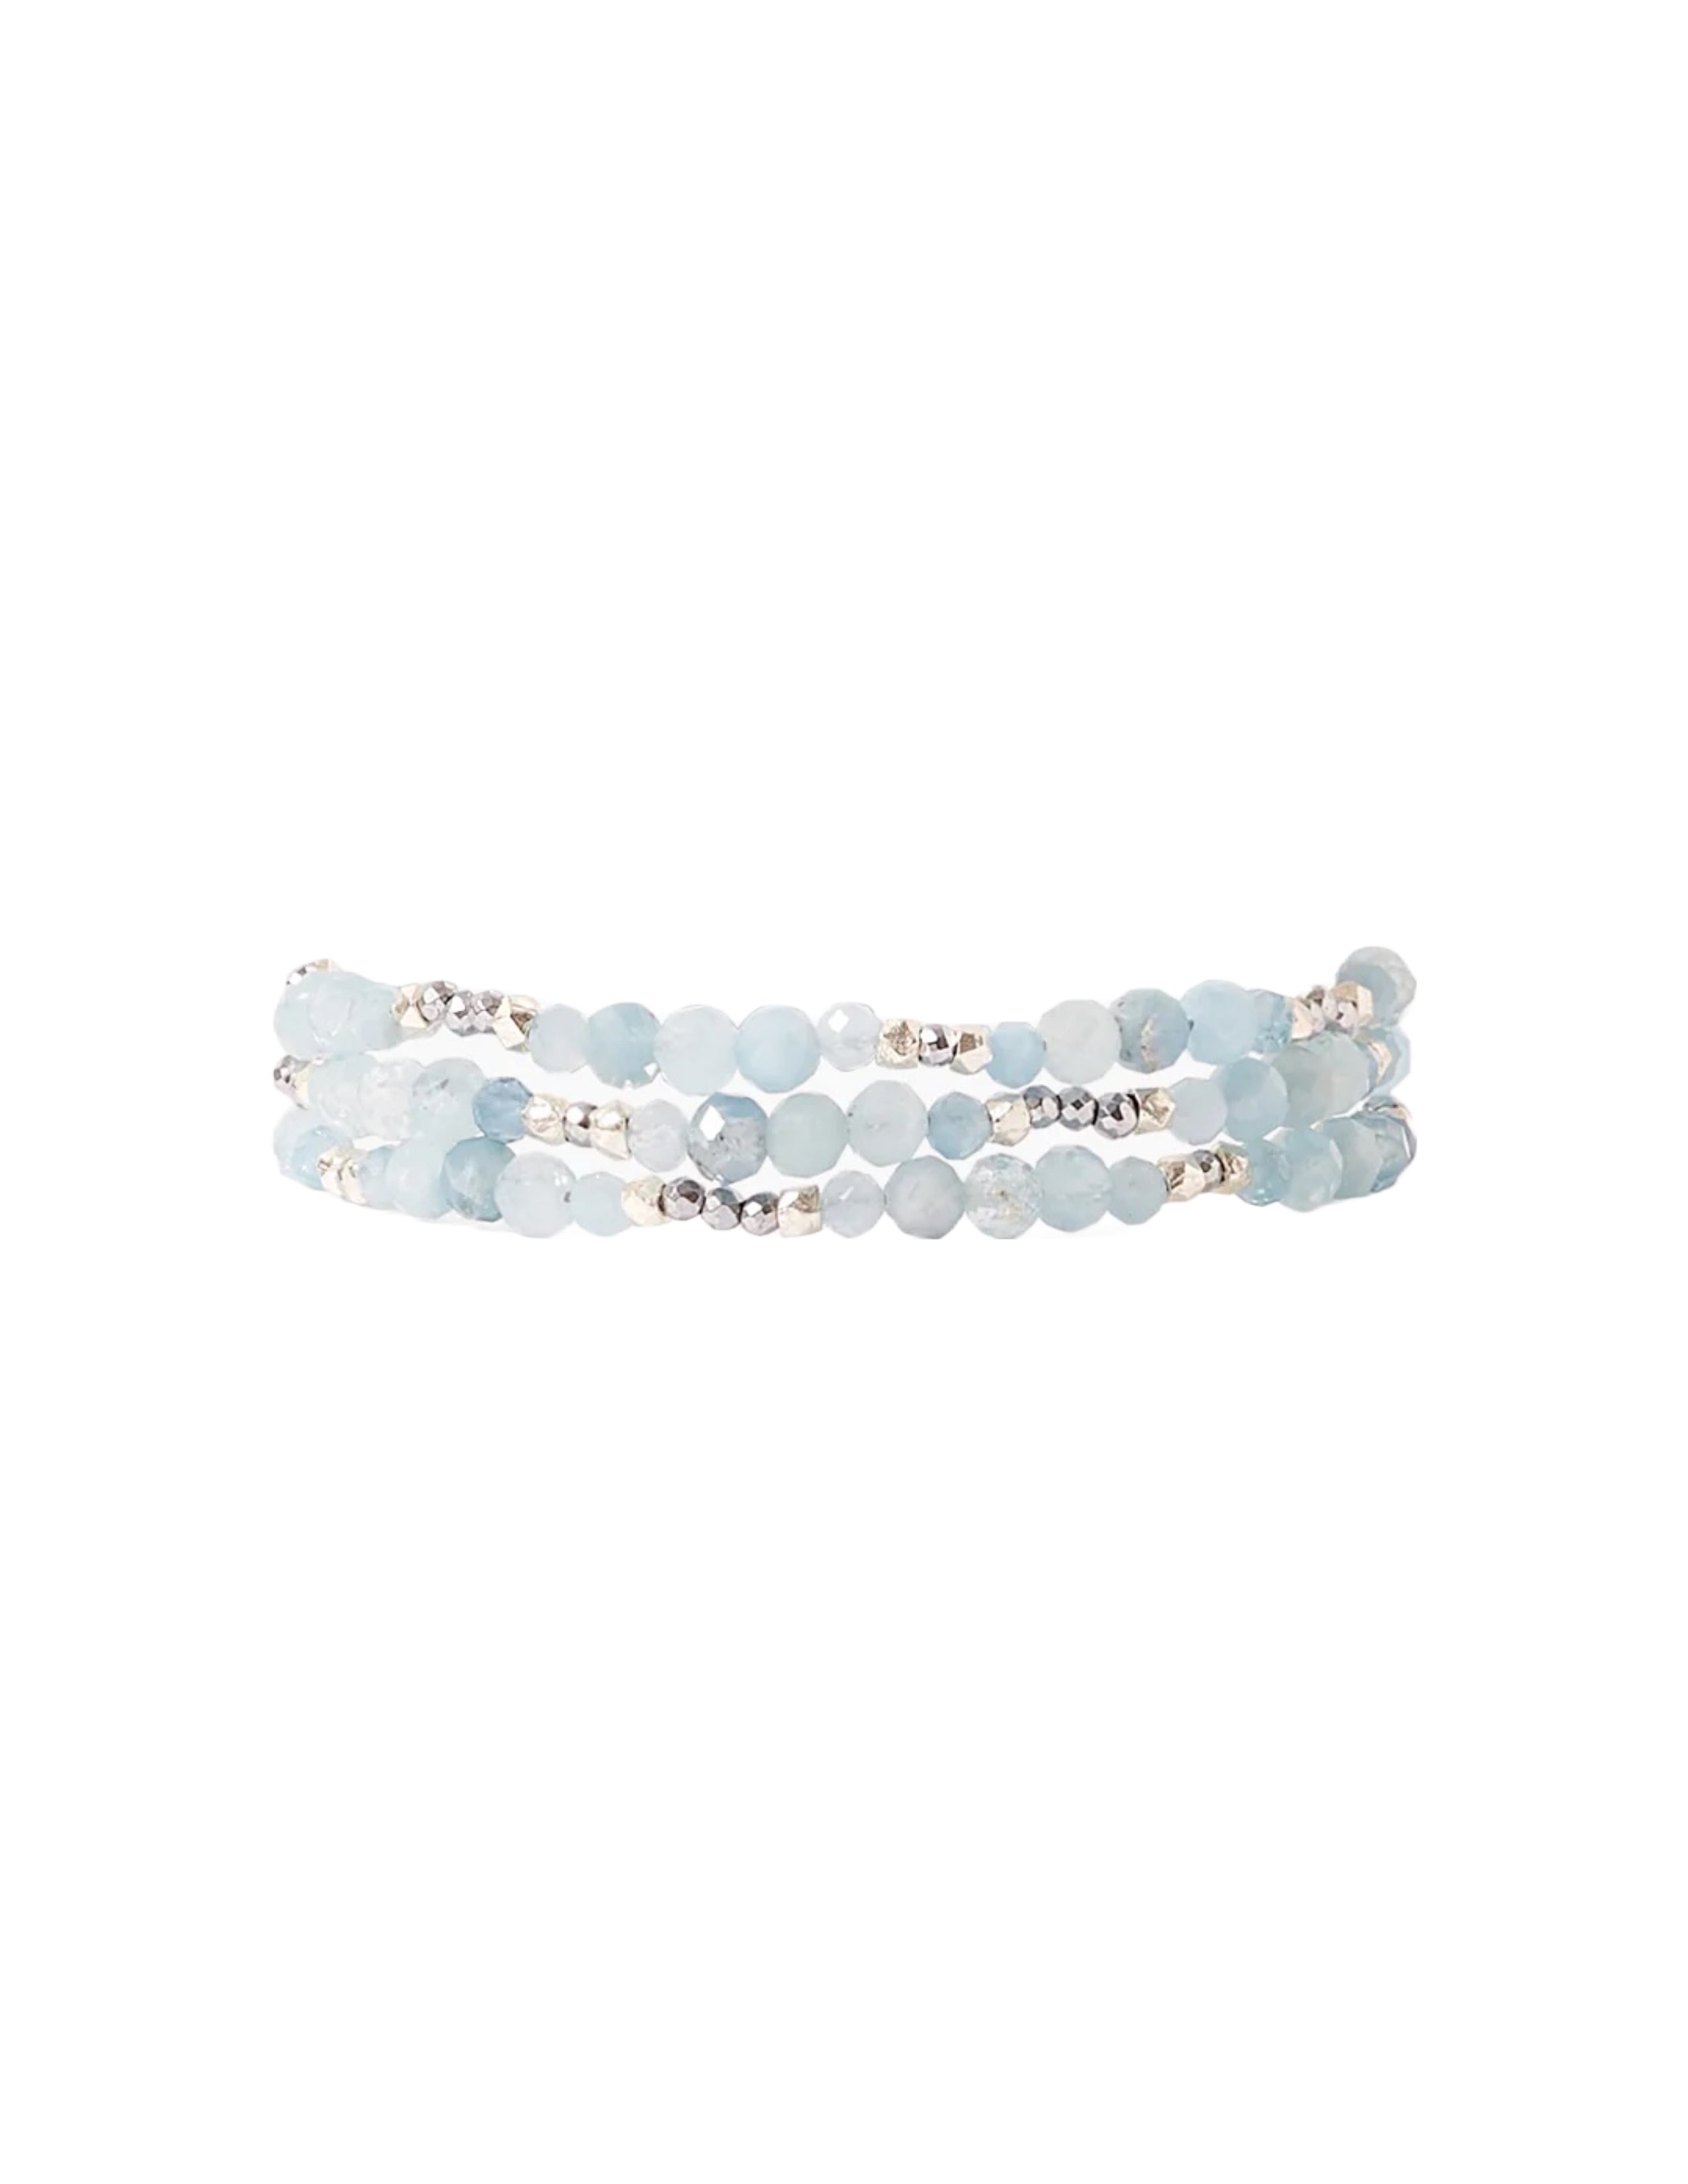 Granada Naked Wrap Bracelet - Aquamarine